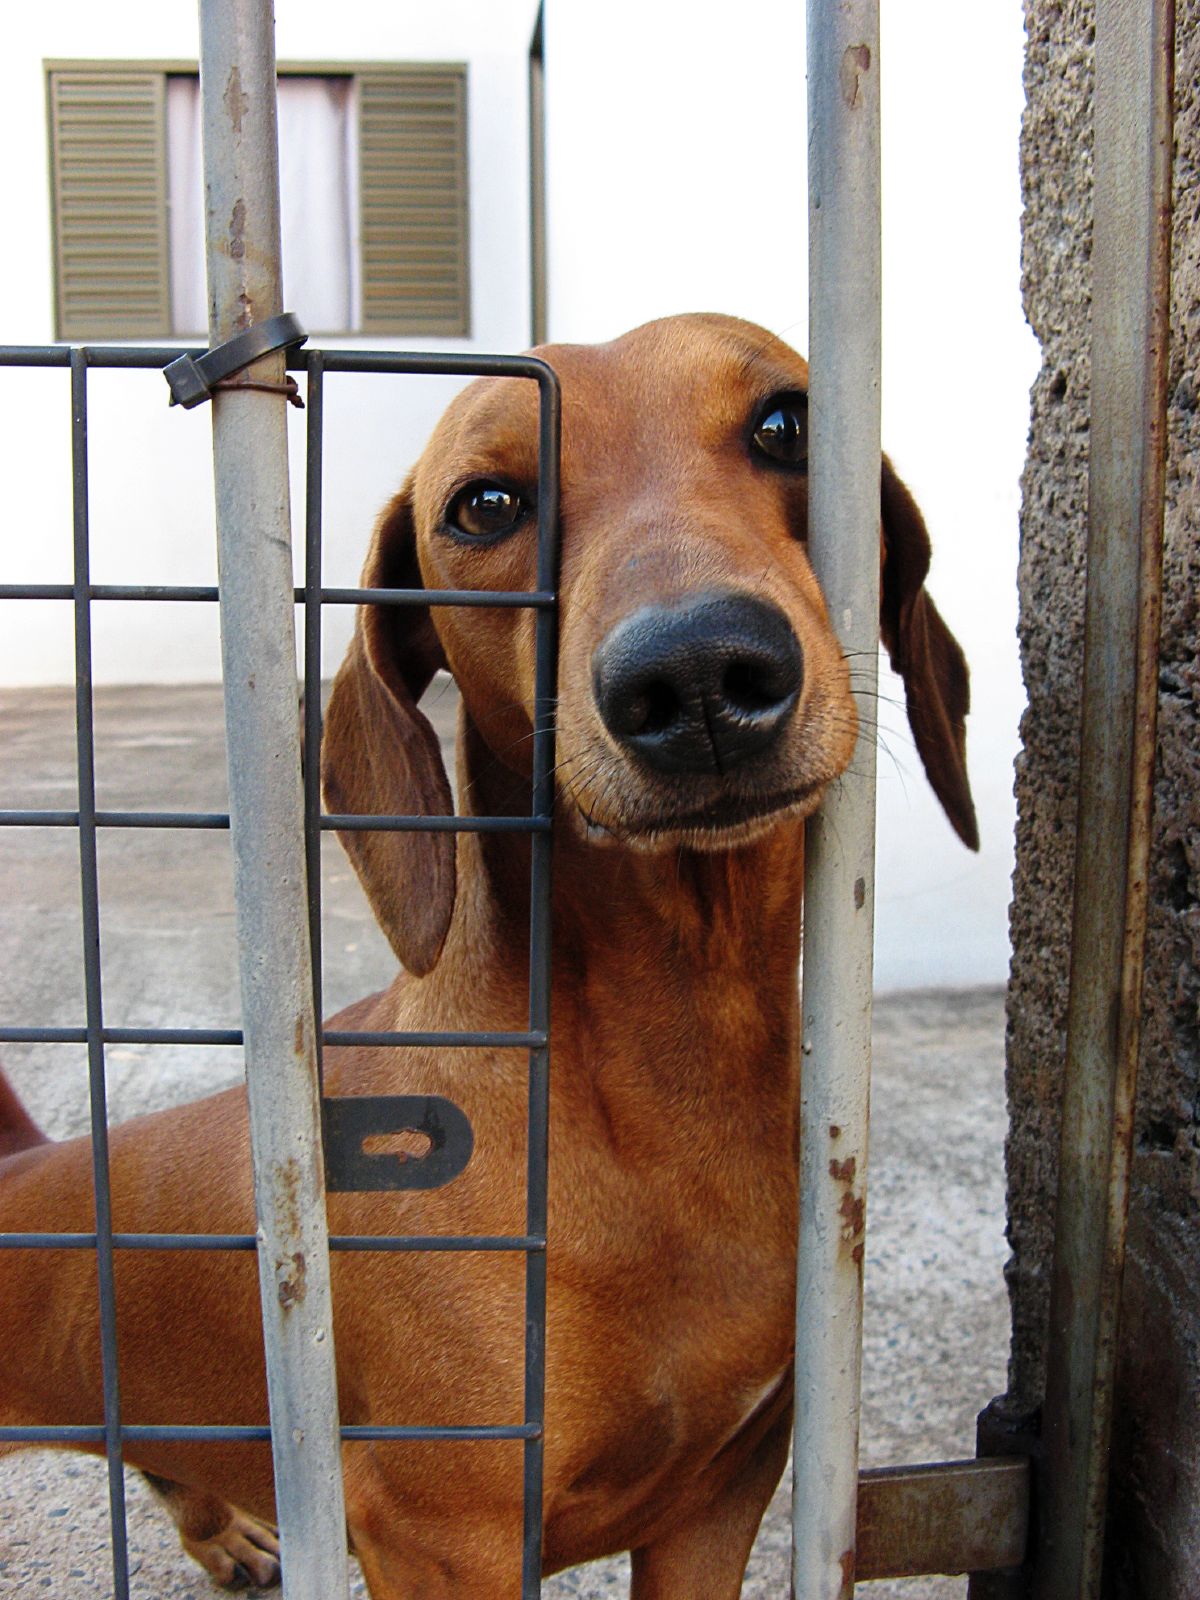 an orange dachshund puppy peeking out through a cage